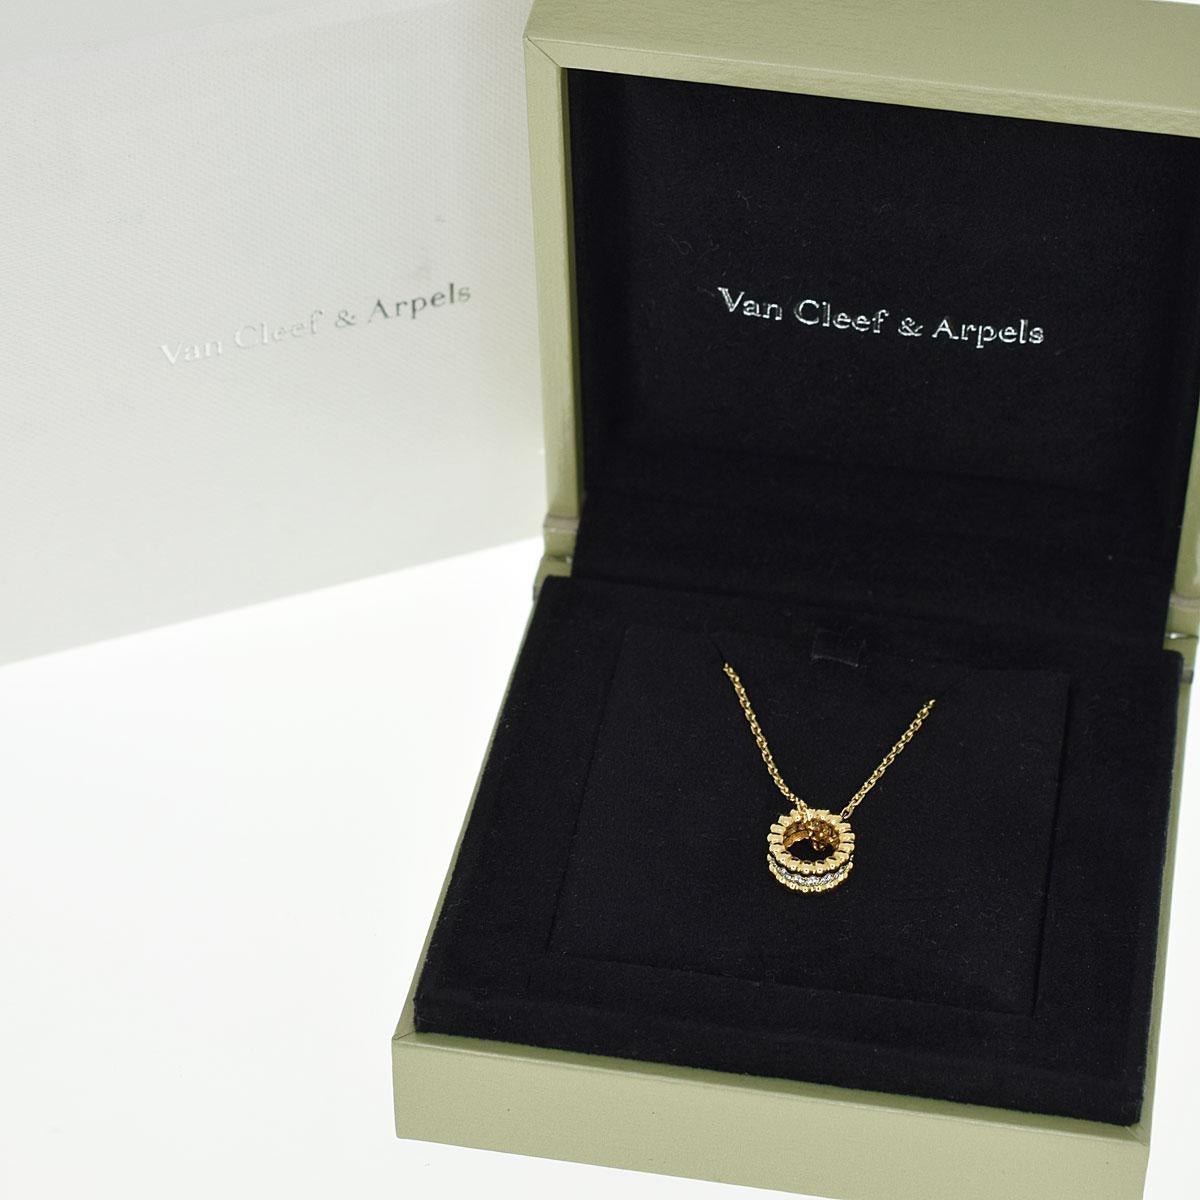 Van Cleef & Arpels 18 Karat Yellow Gold Perlee Diamond Pendant Necklace 1